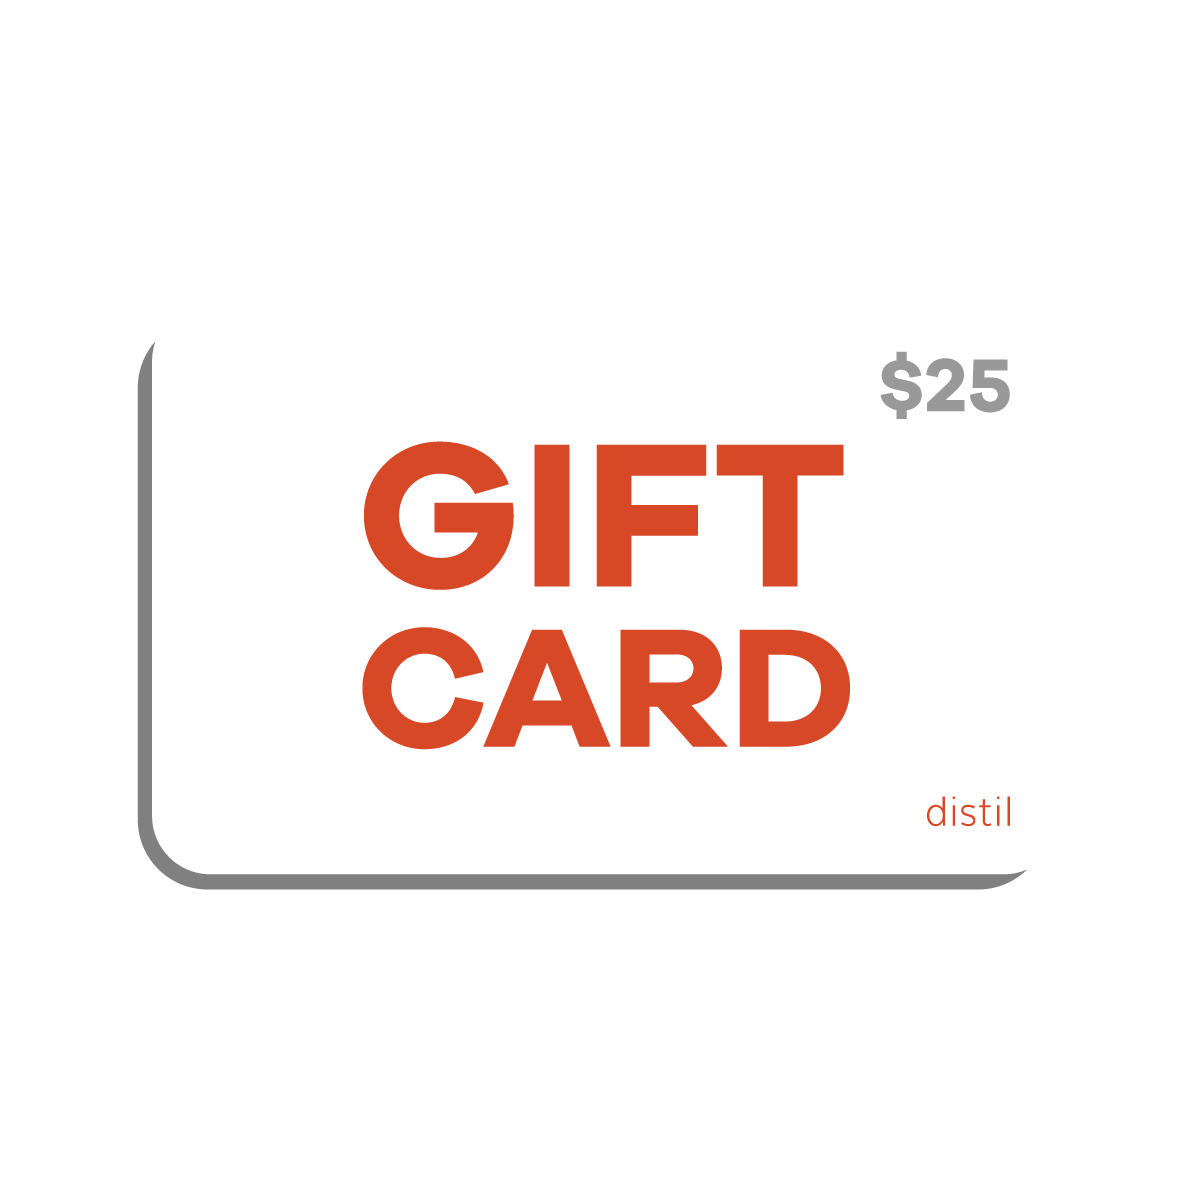 A digital Distil Union gift card worth $25